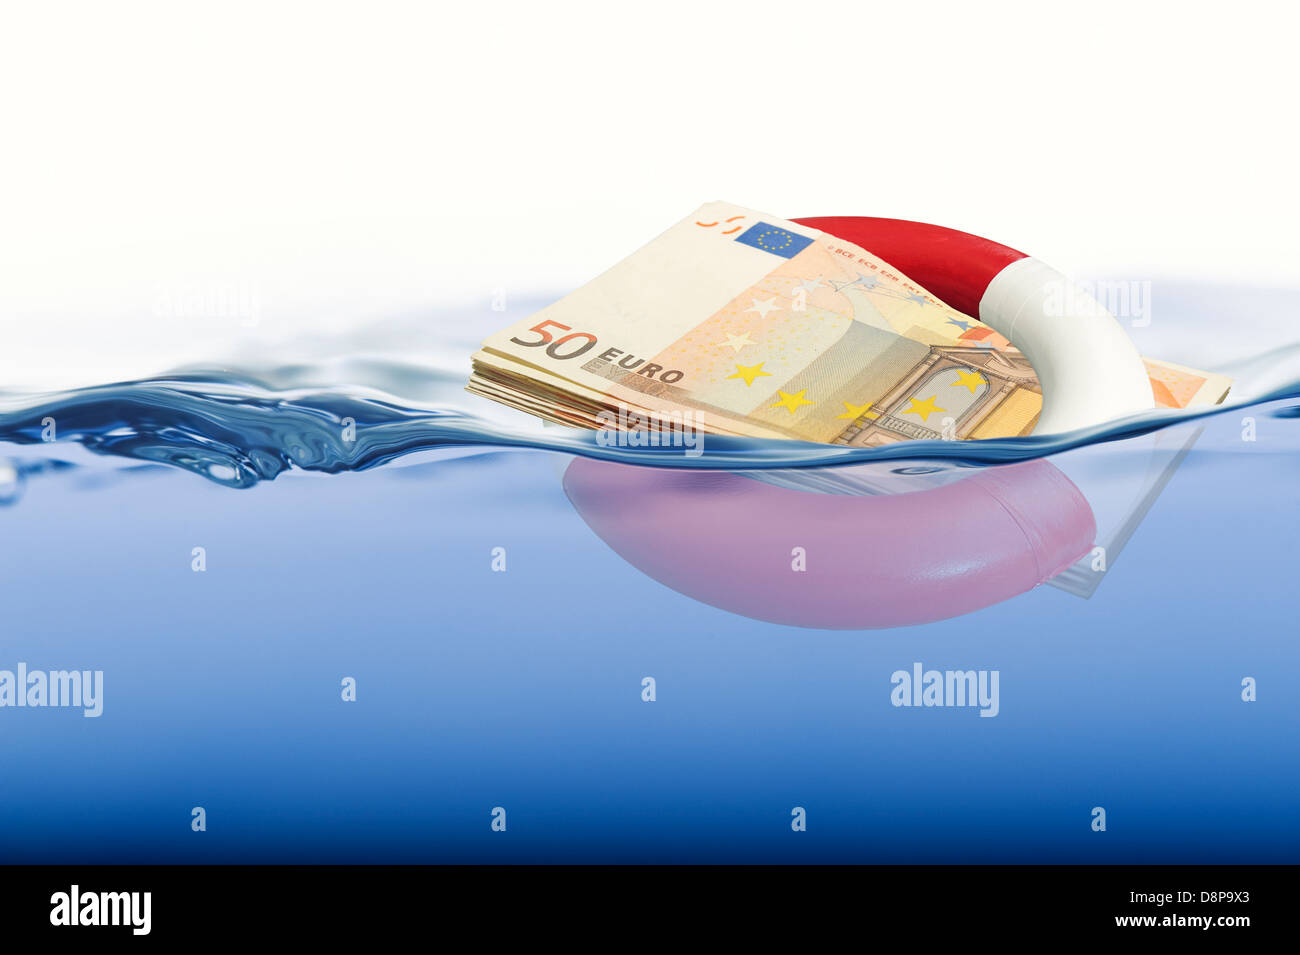 La noyade de sauvetage de l'Euro - Adobe RVB Banque D'Images